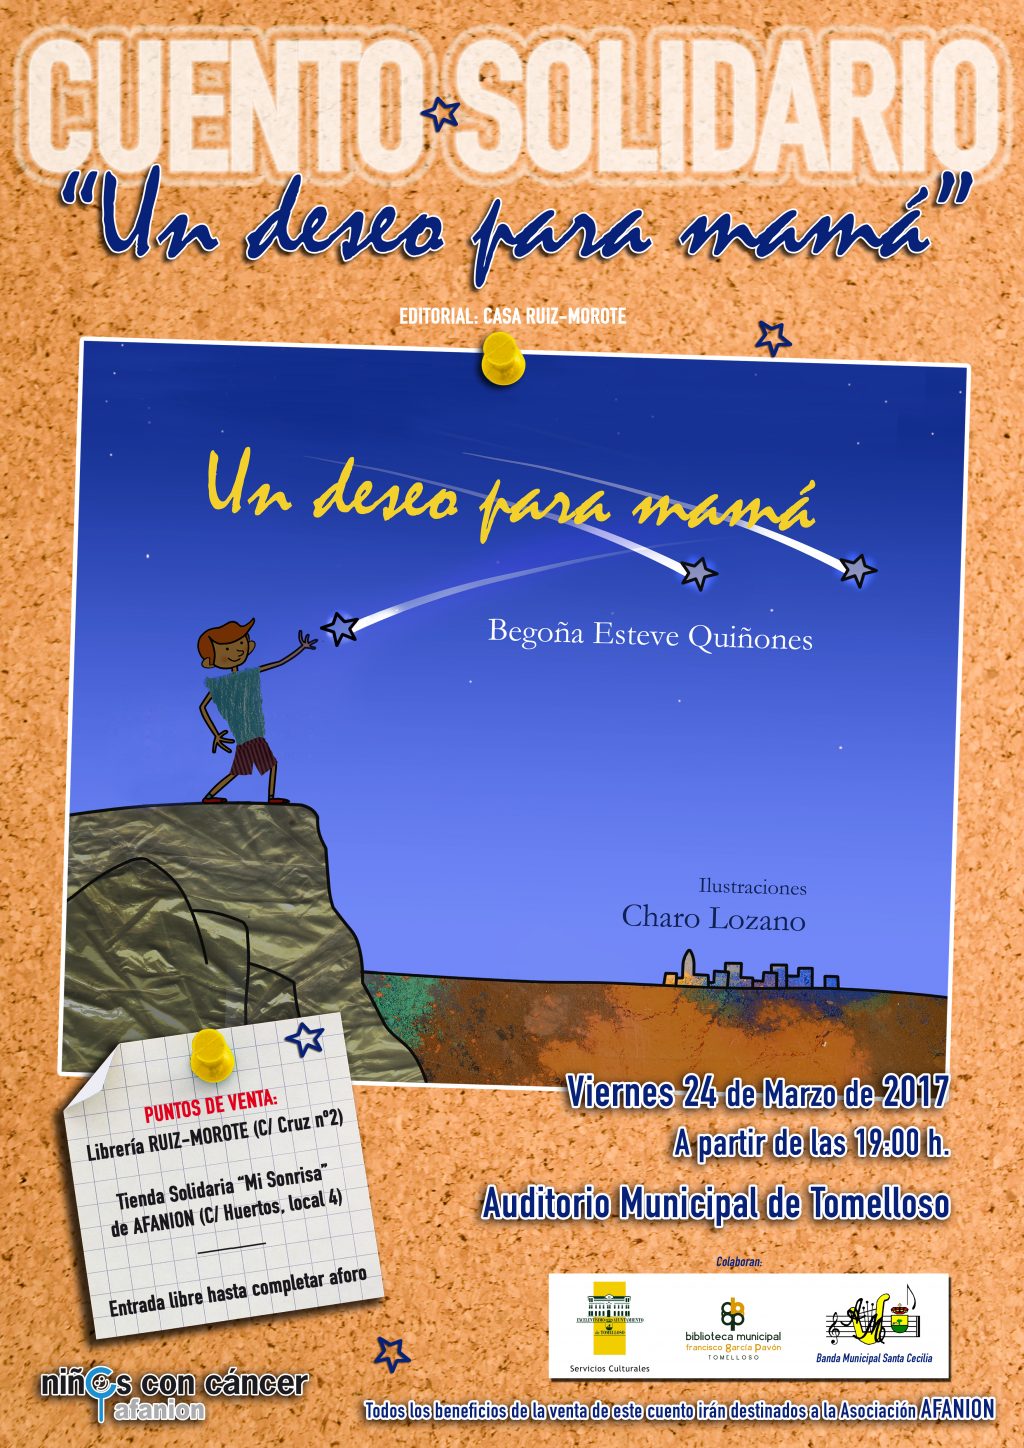 El libro solidario “Un deseo para mamá” se presenta el viernes en Tomelloso